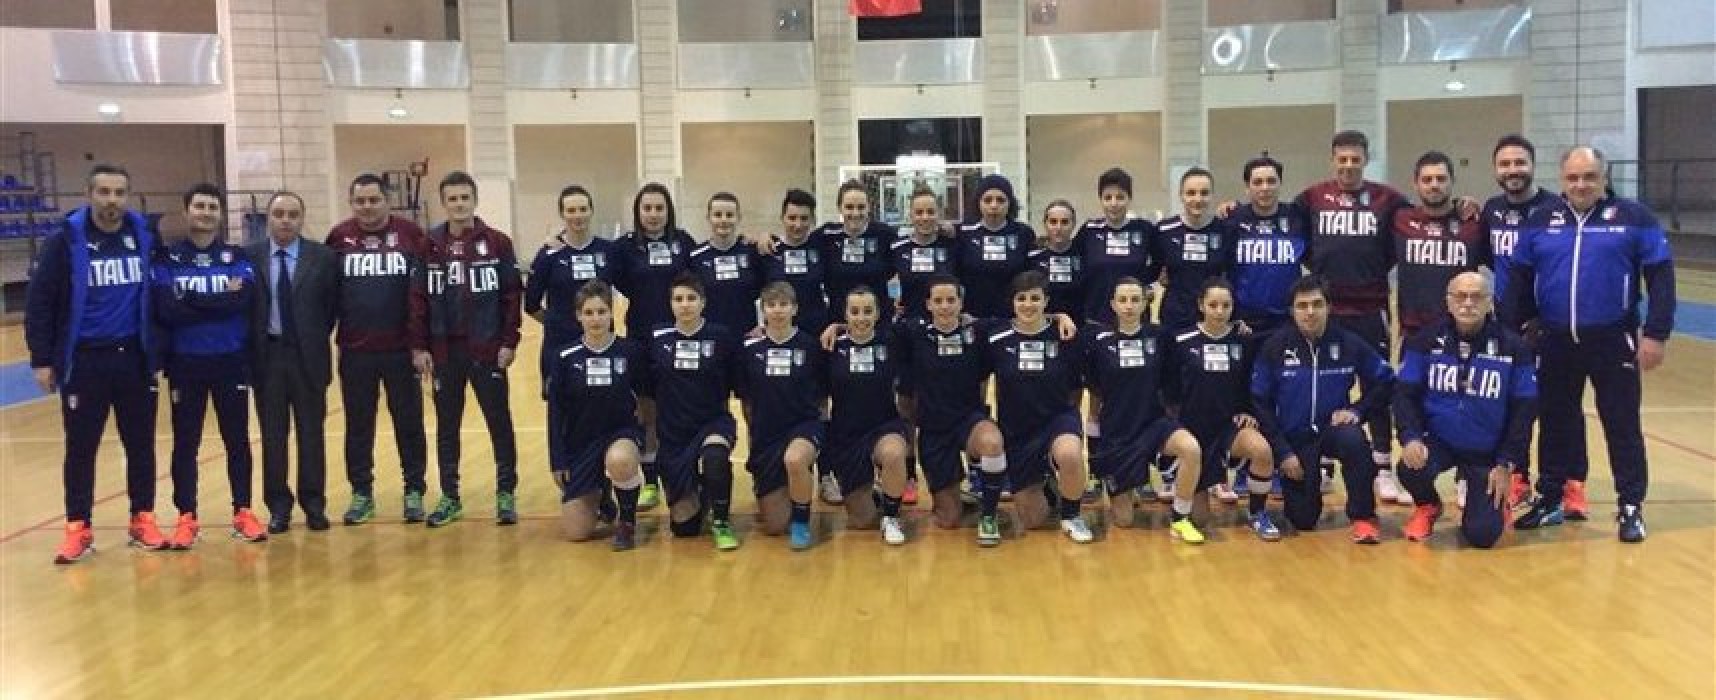 Nazionale italiana femminile di futsal, tra le convocate c’è la Pinto (Arcadia)